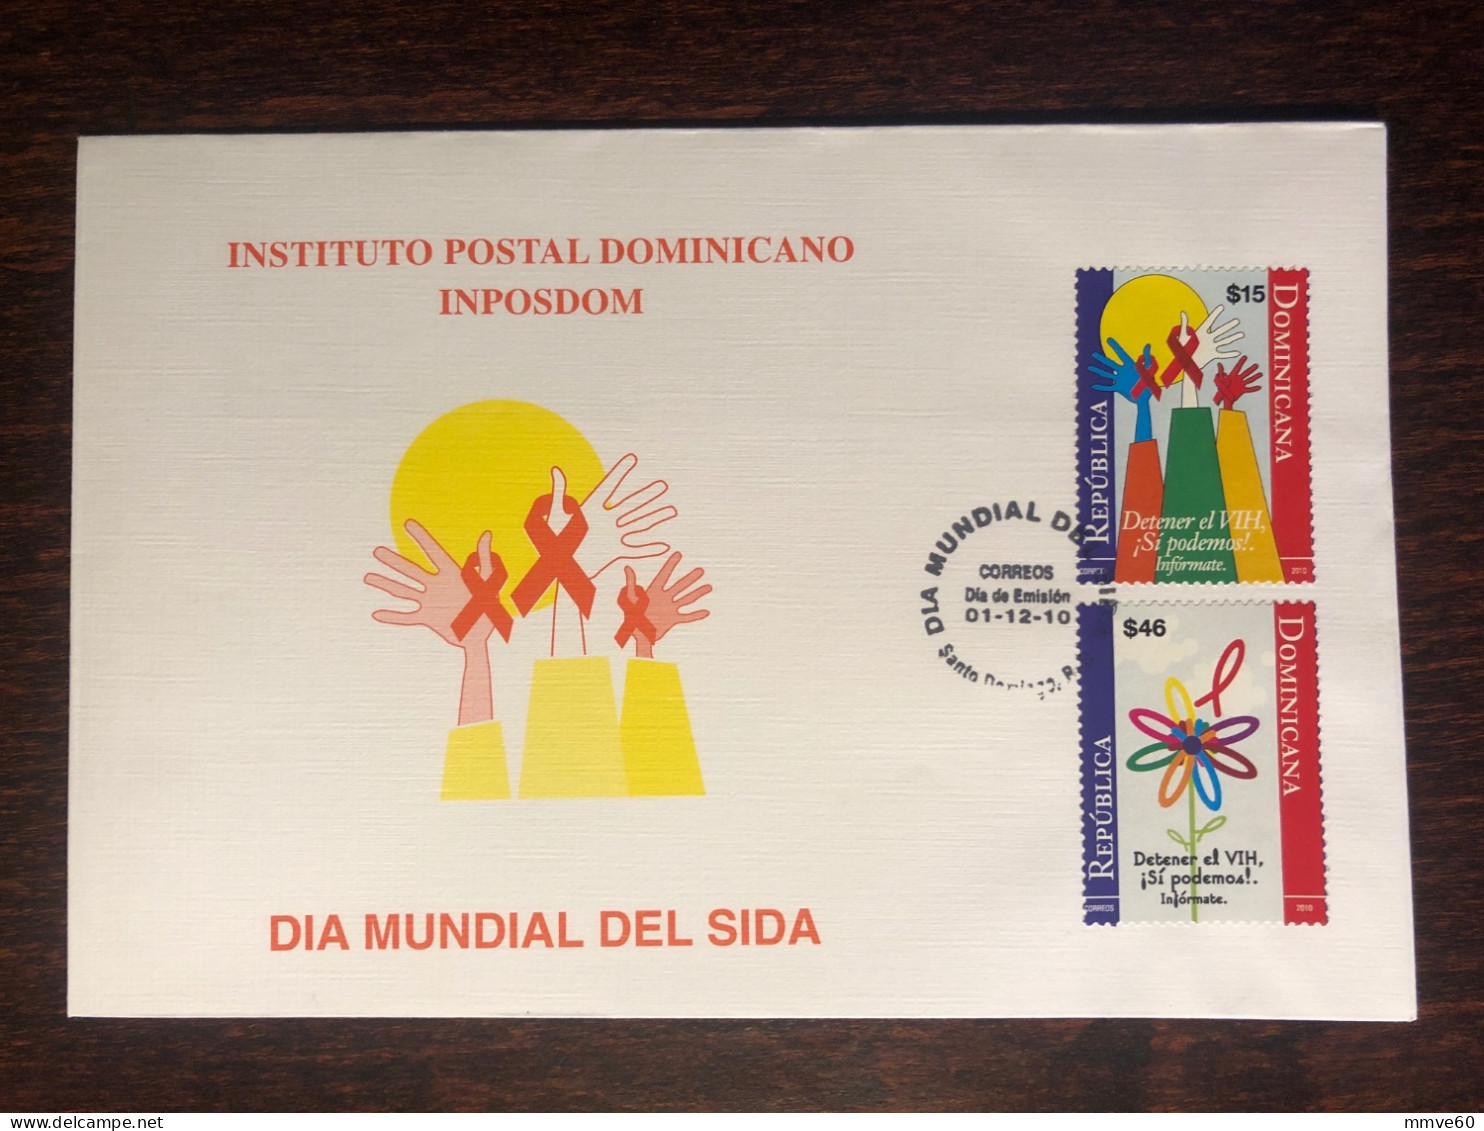 DOMINICAN FDC COVER 2010 YEAR AIDS SIDA  HEALTH MEDICINE STAMPS - Repubblica Domenicana